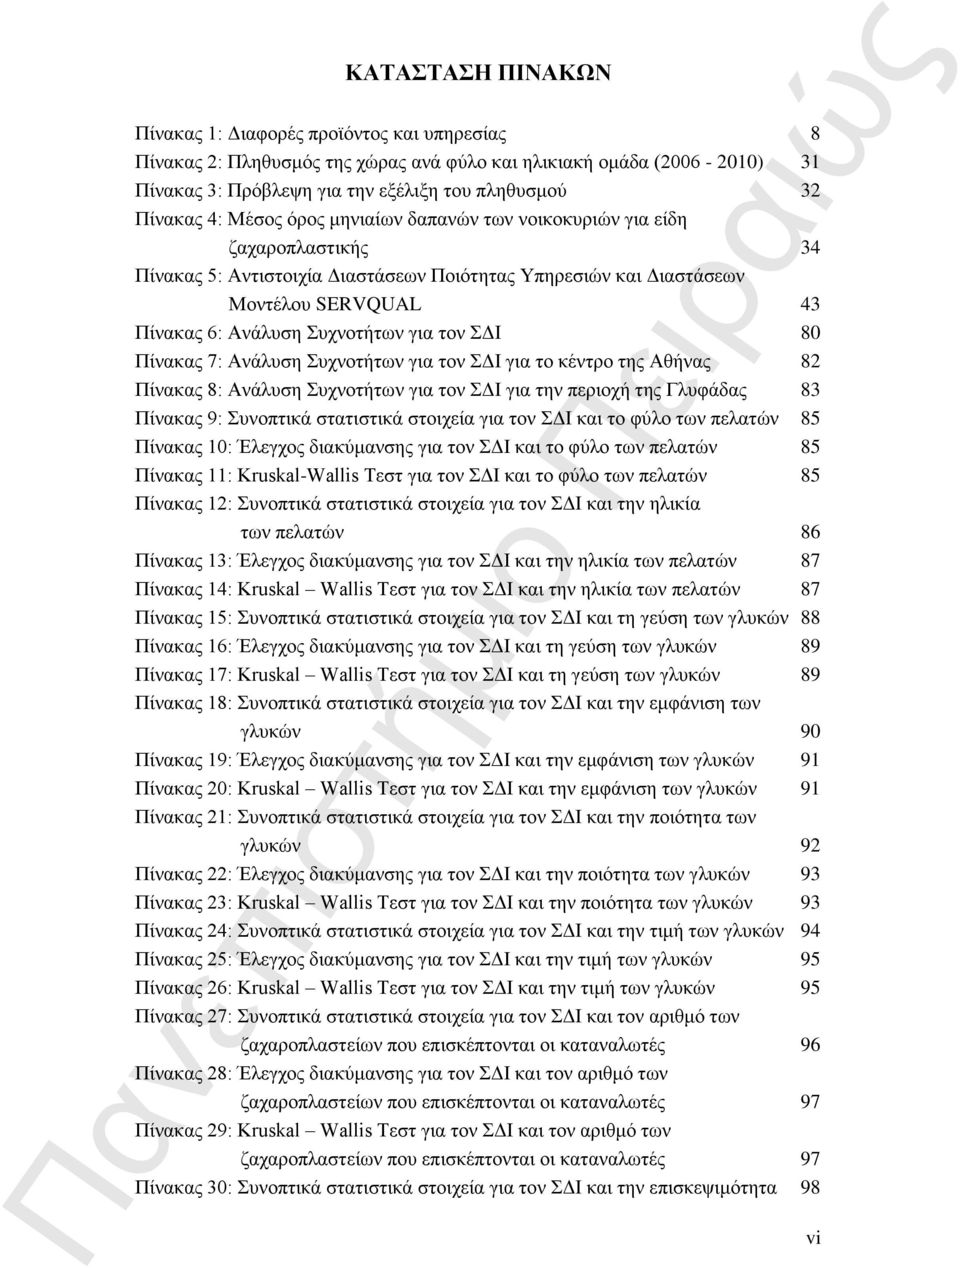 τον ΣΔΙ 80 Πίνακας 7: Ανάλυση Συχνοτήτων για τον ΣΔΙ για το κέντρο της Αθήνας 82 Πίνακας 8: Ανάλυση Συχνοτήτων για τον ΣΔΙ για την περιοχή της Γλυφάδας 83 Πίνακας 9: Συνοπτικά στατιστικά στοιχεία για